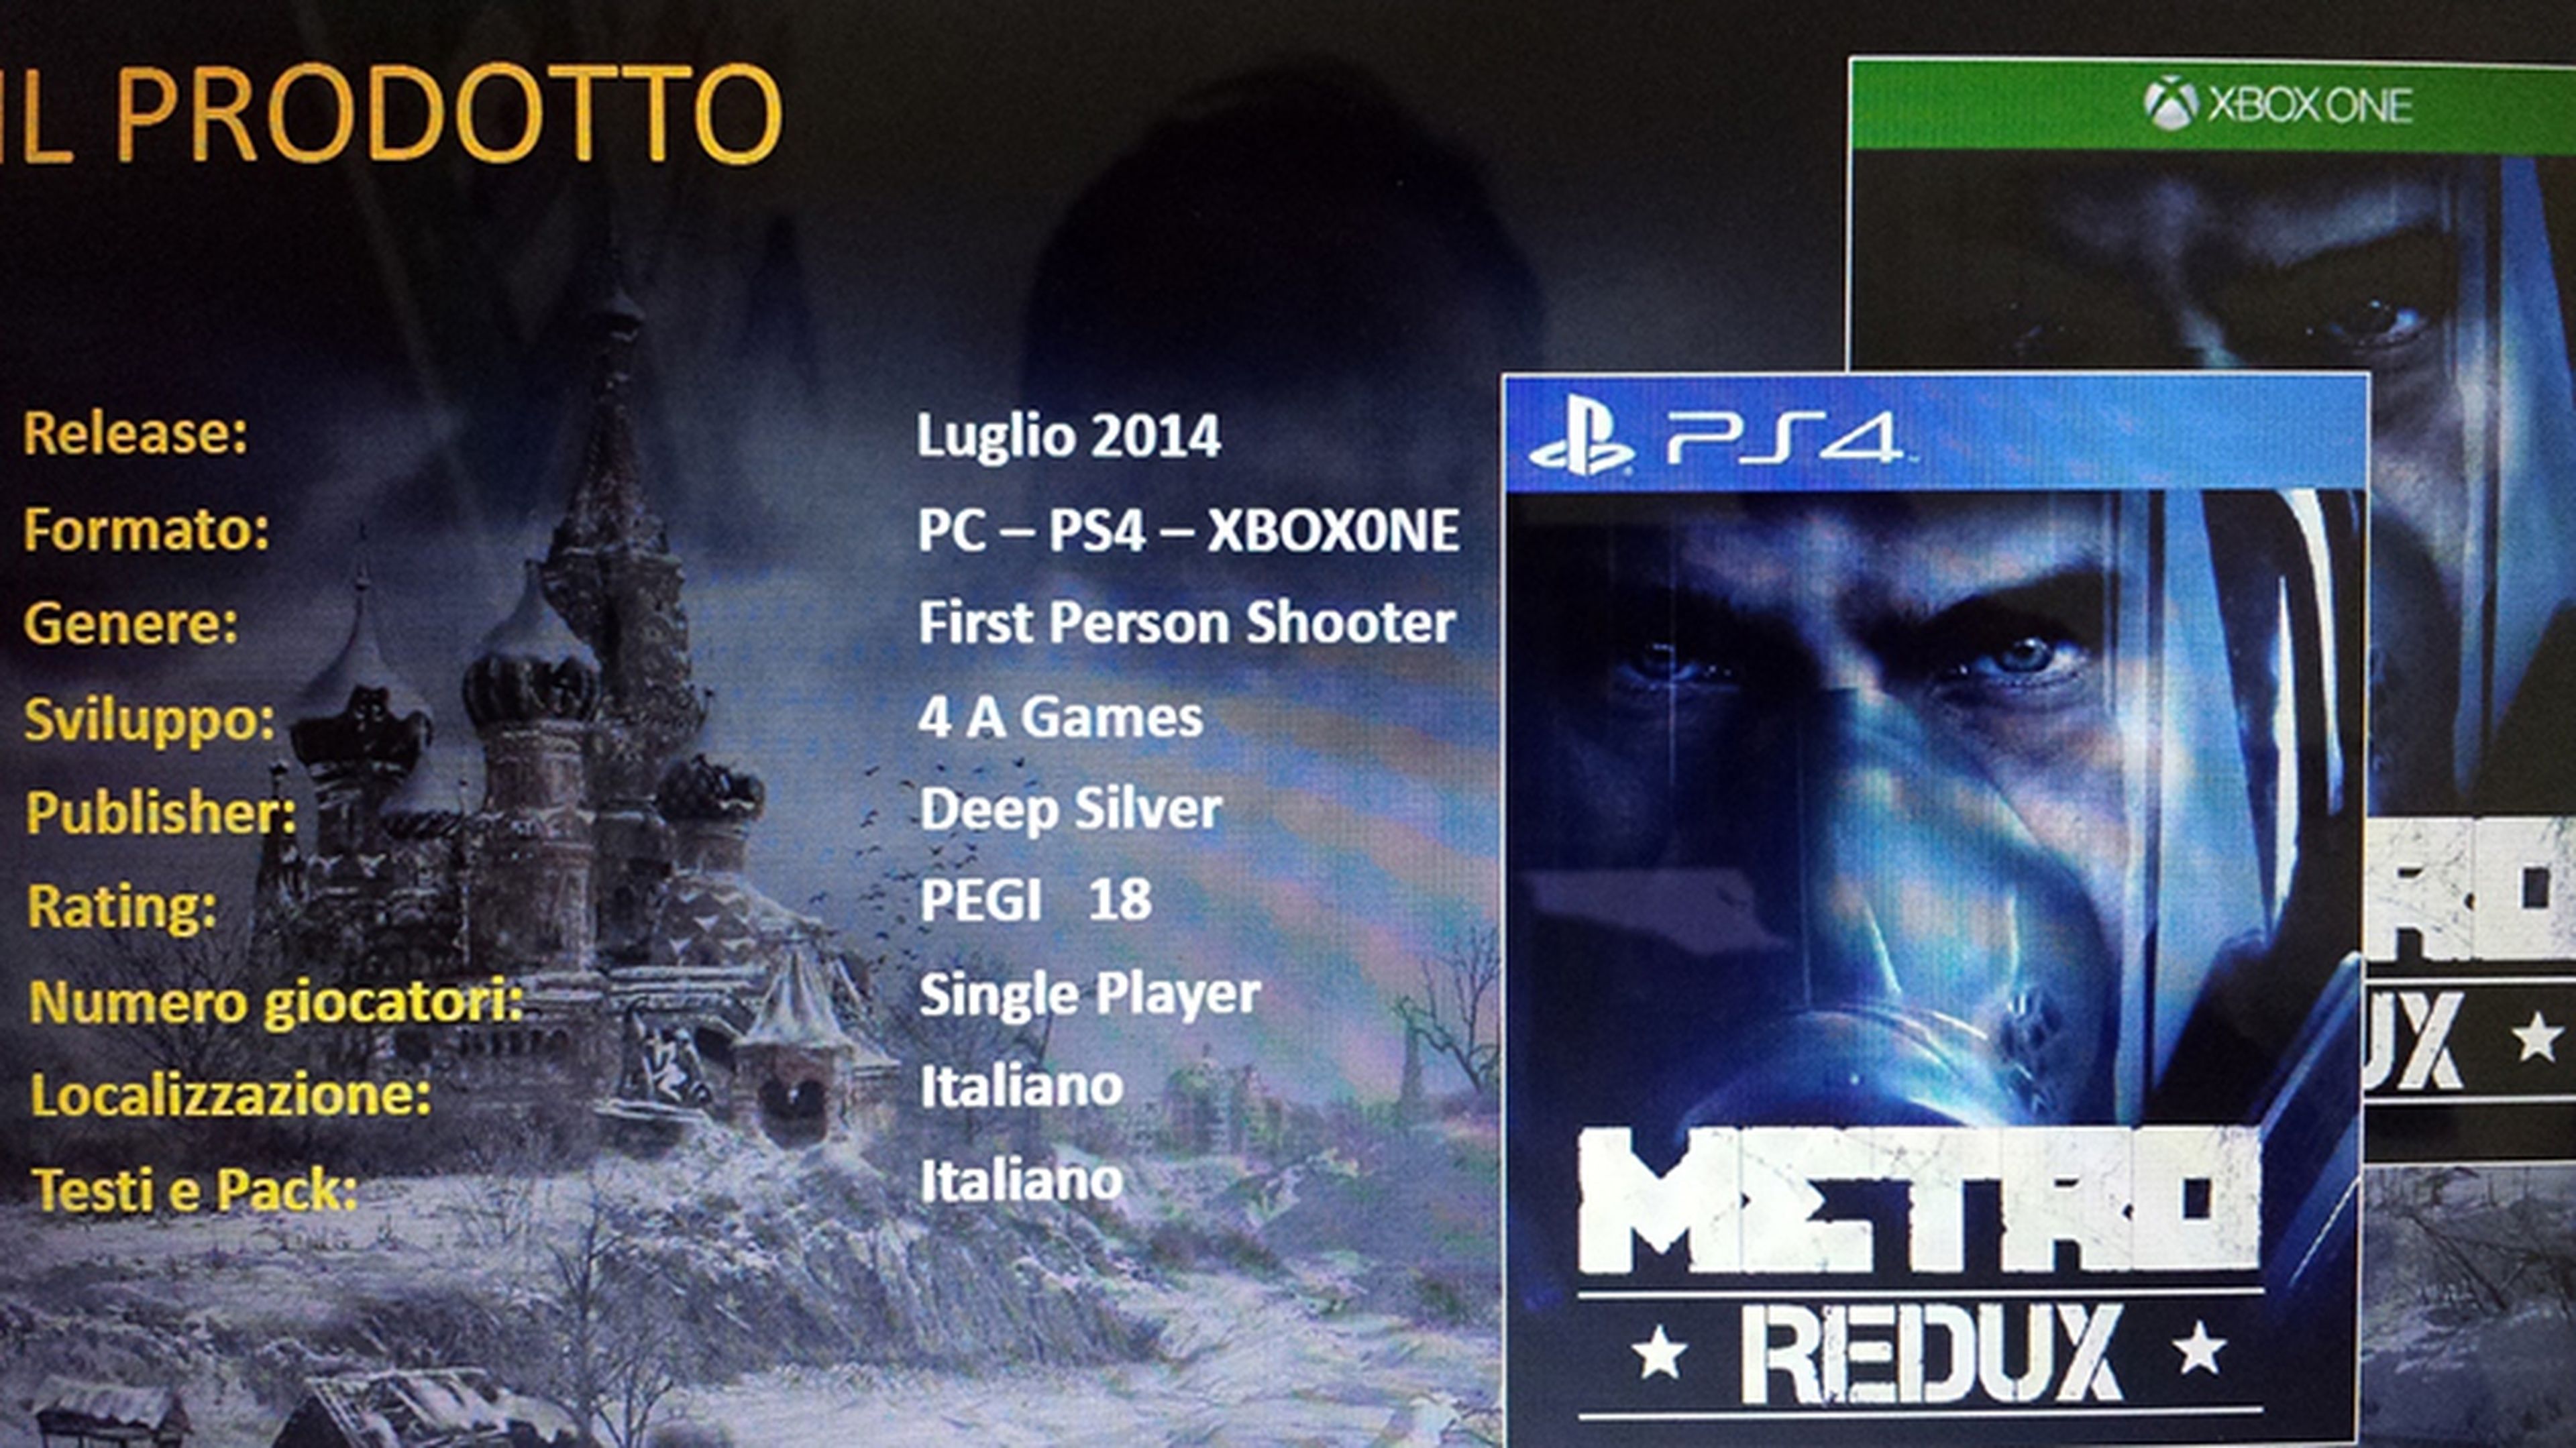 Metro Redux, confirmado para PS4, Xbox One y PC